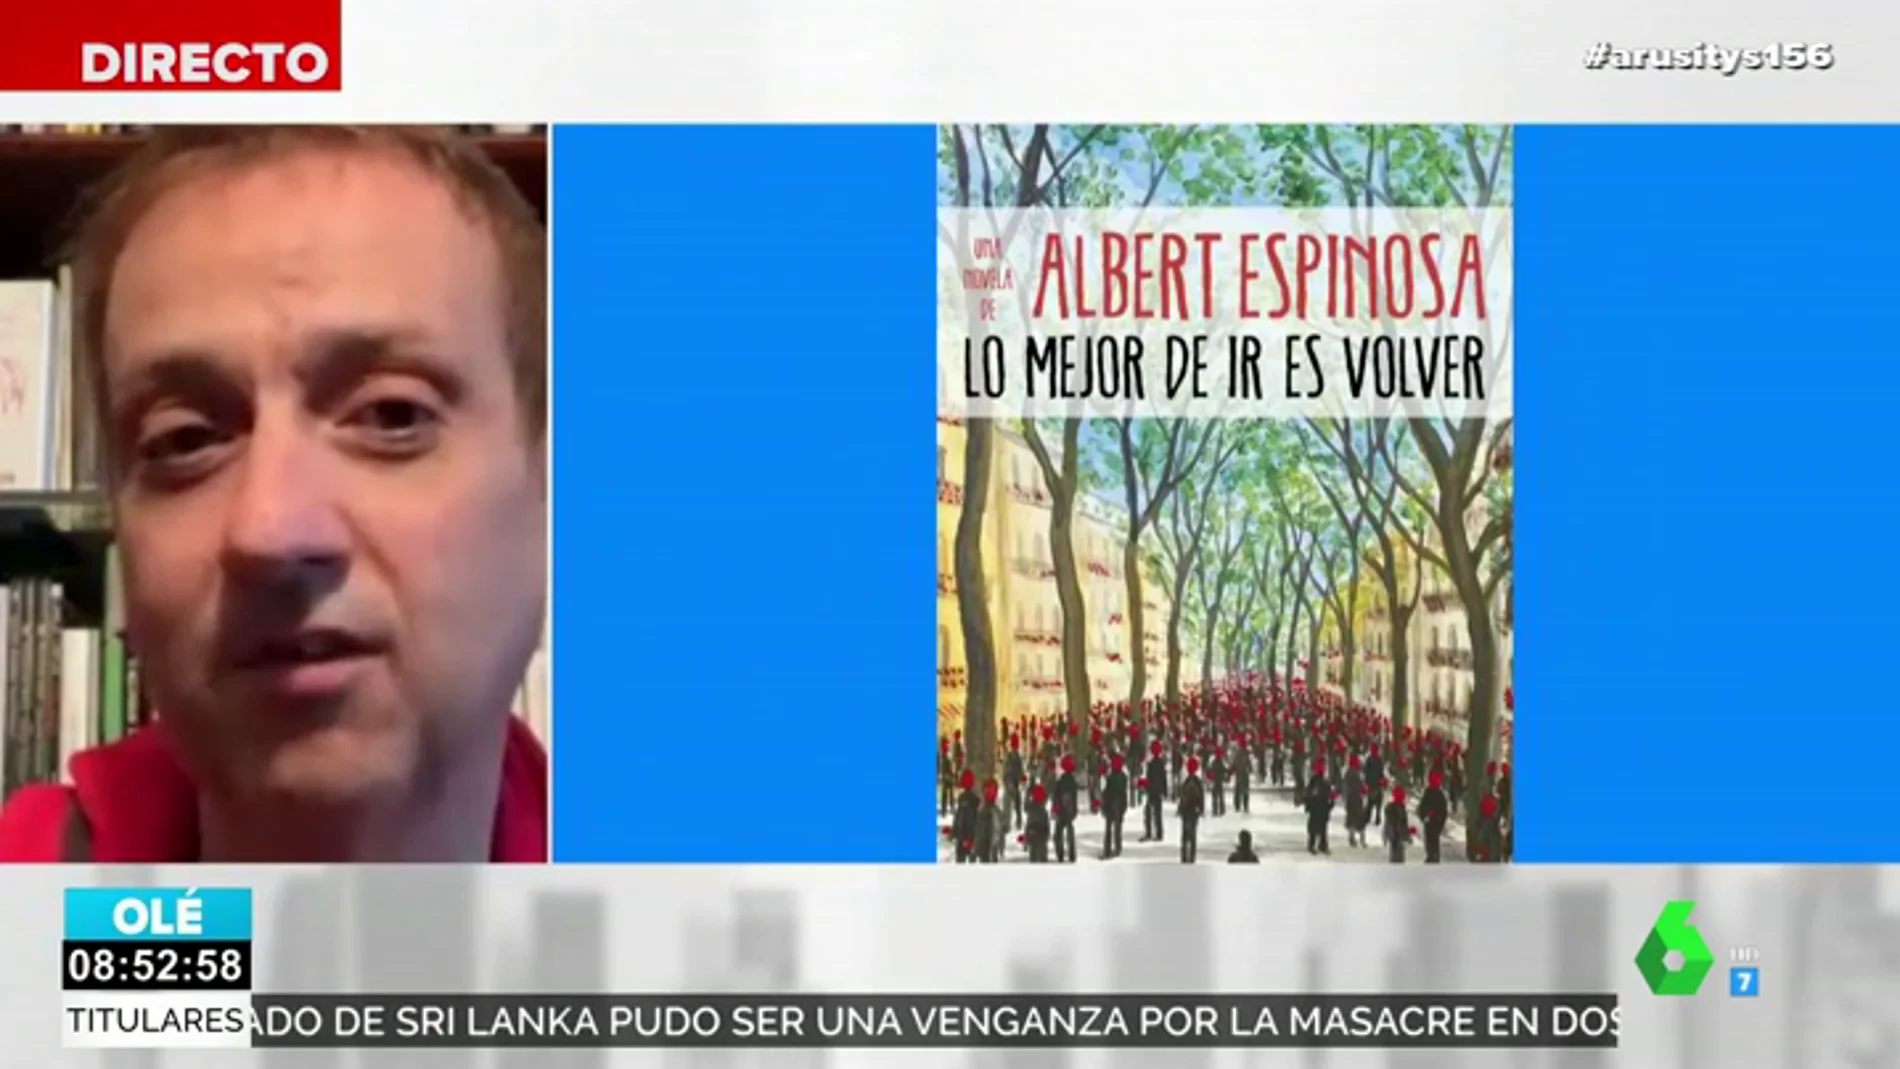 Albert Espinosa, autor de ficción más vendido de Sant Jordi con 'Lo mejor de ir es volver'